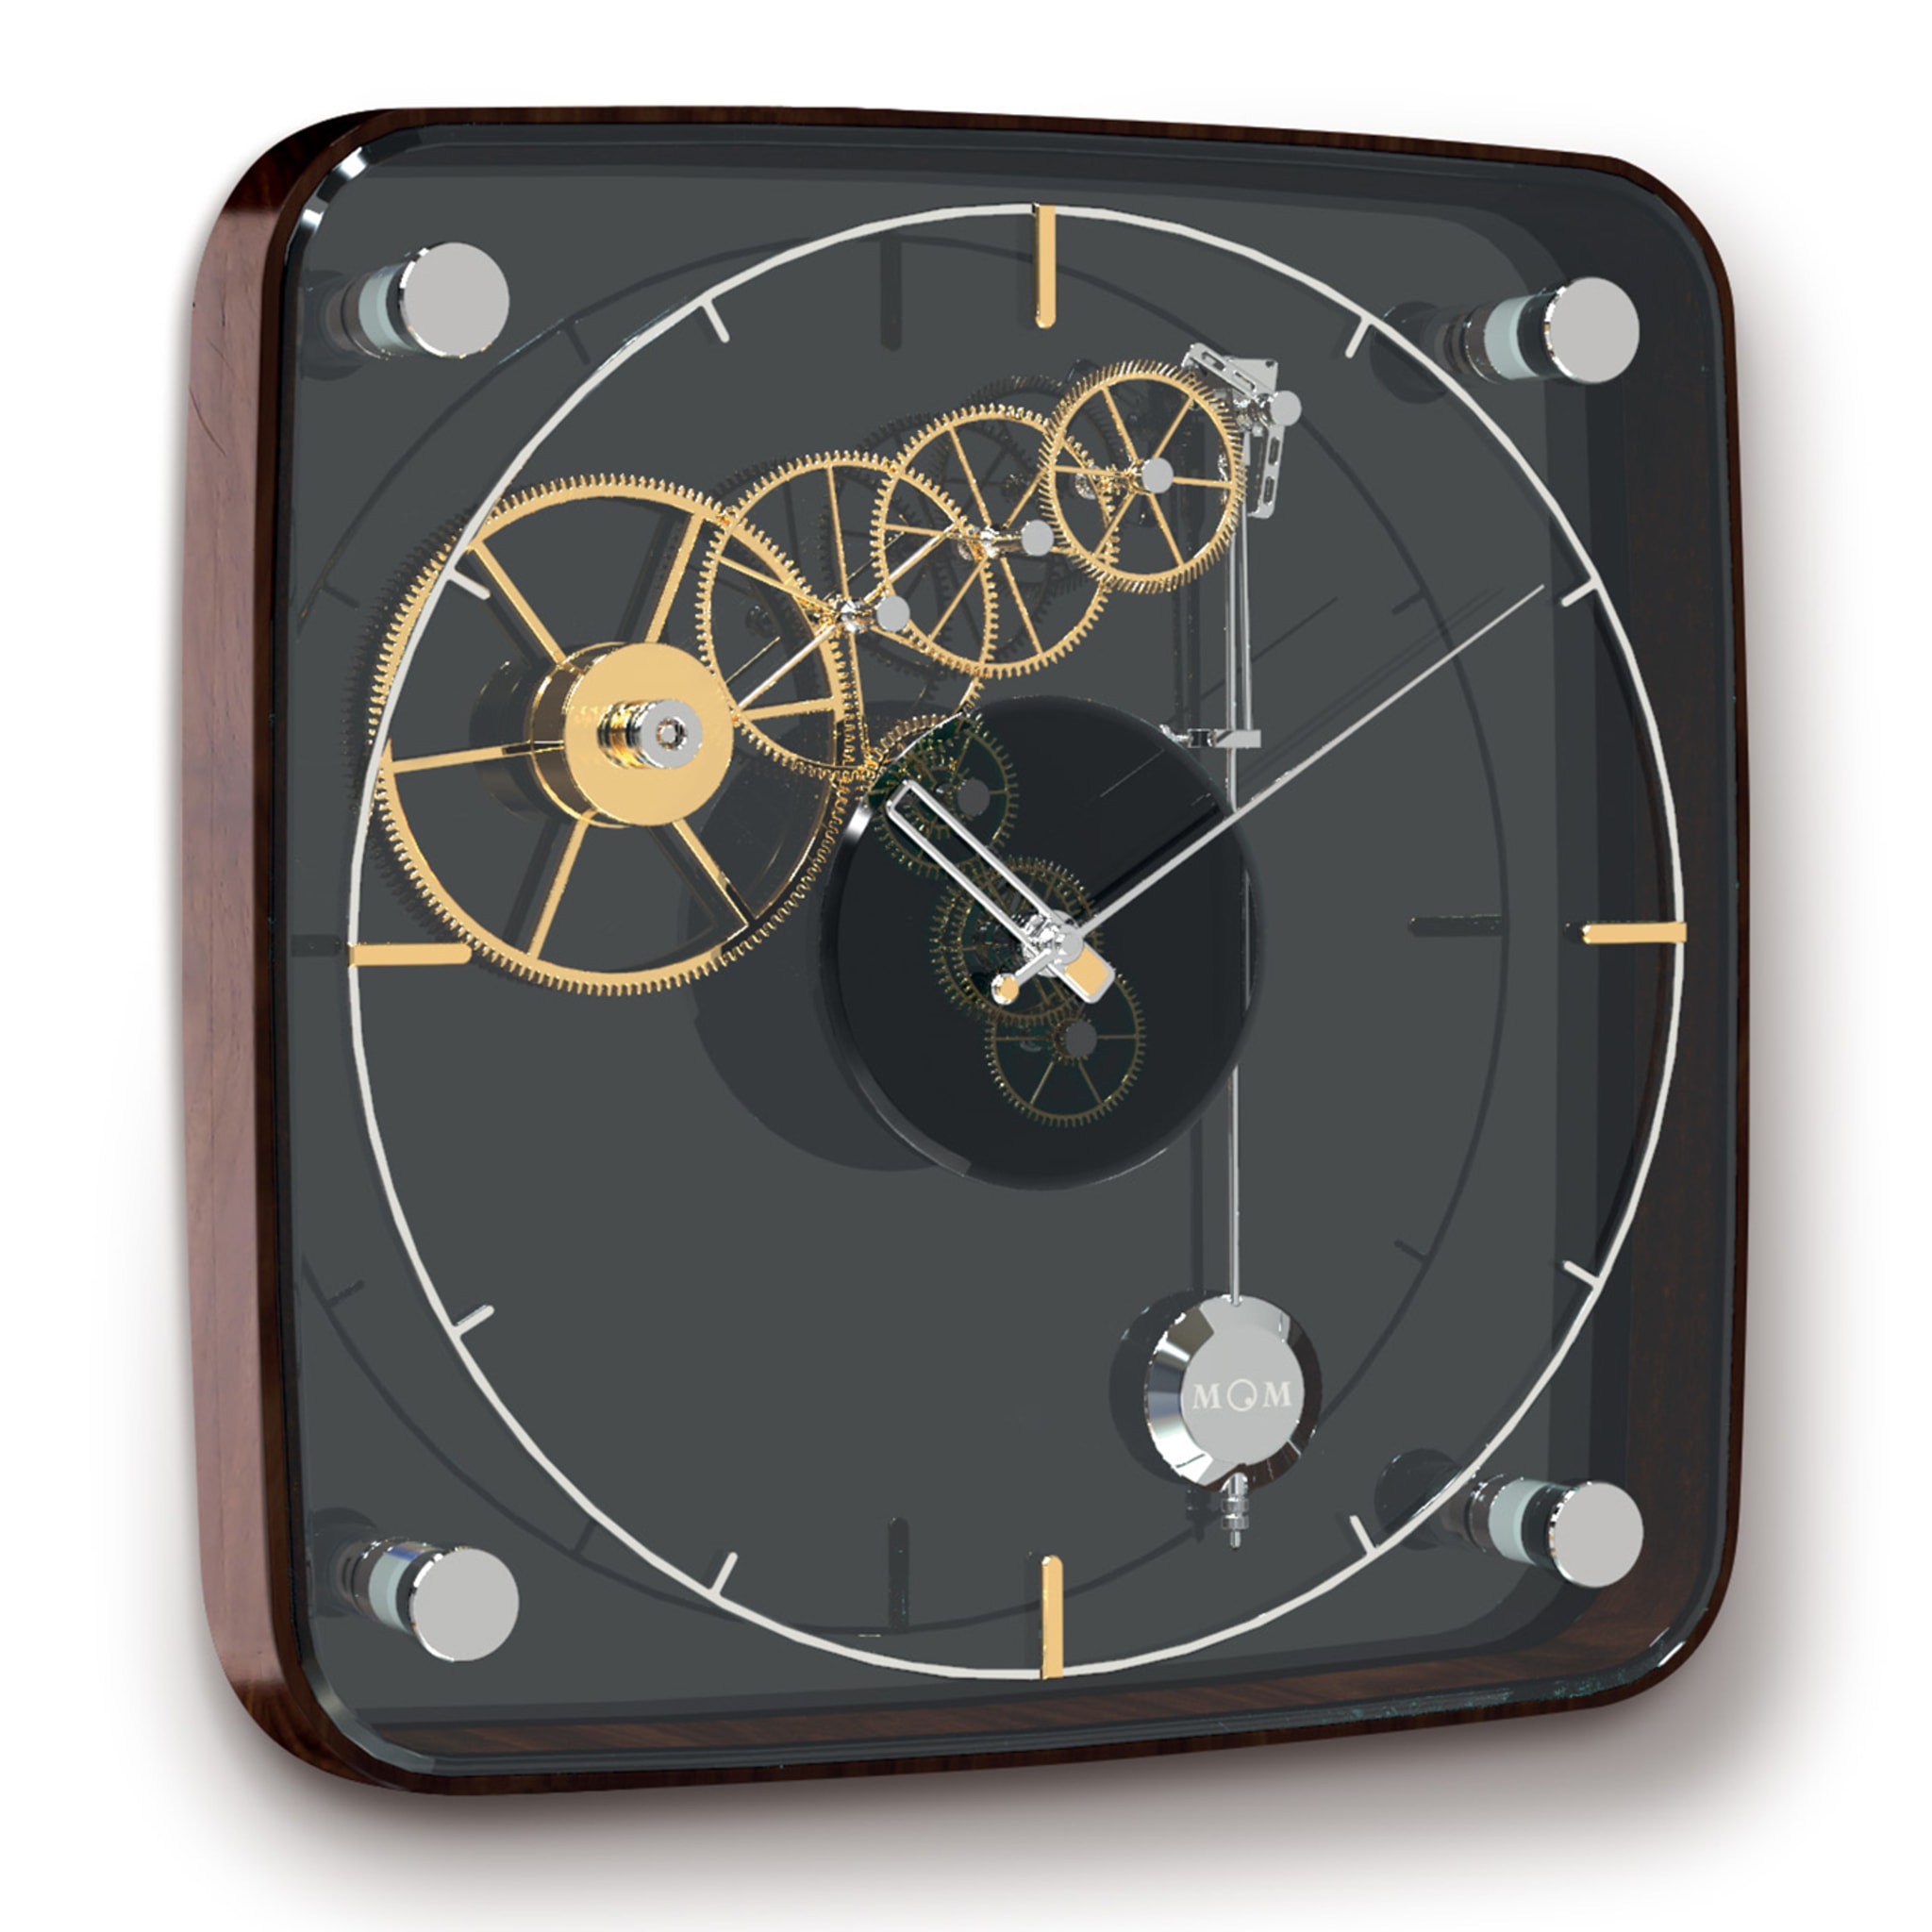 Vivo Clock by A. Rigotto, G. Barban & L. Di Giovanni - Alternative view 1